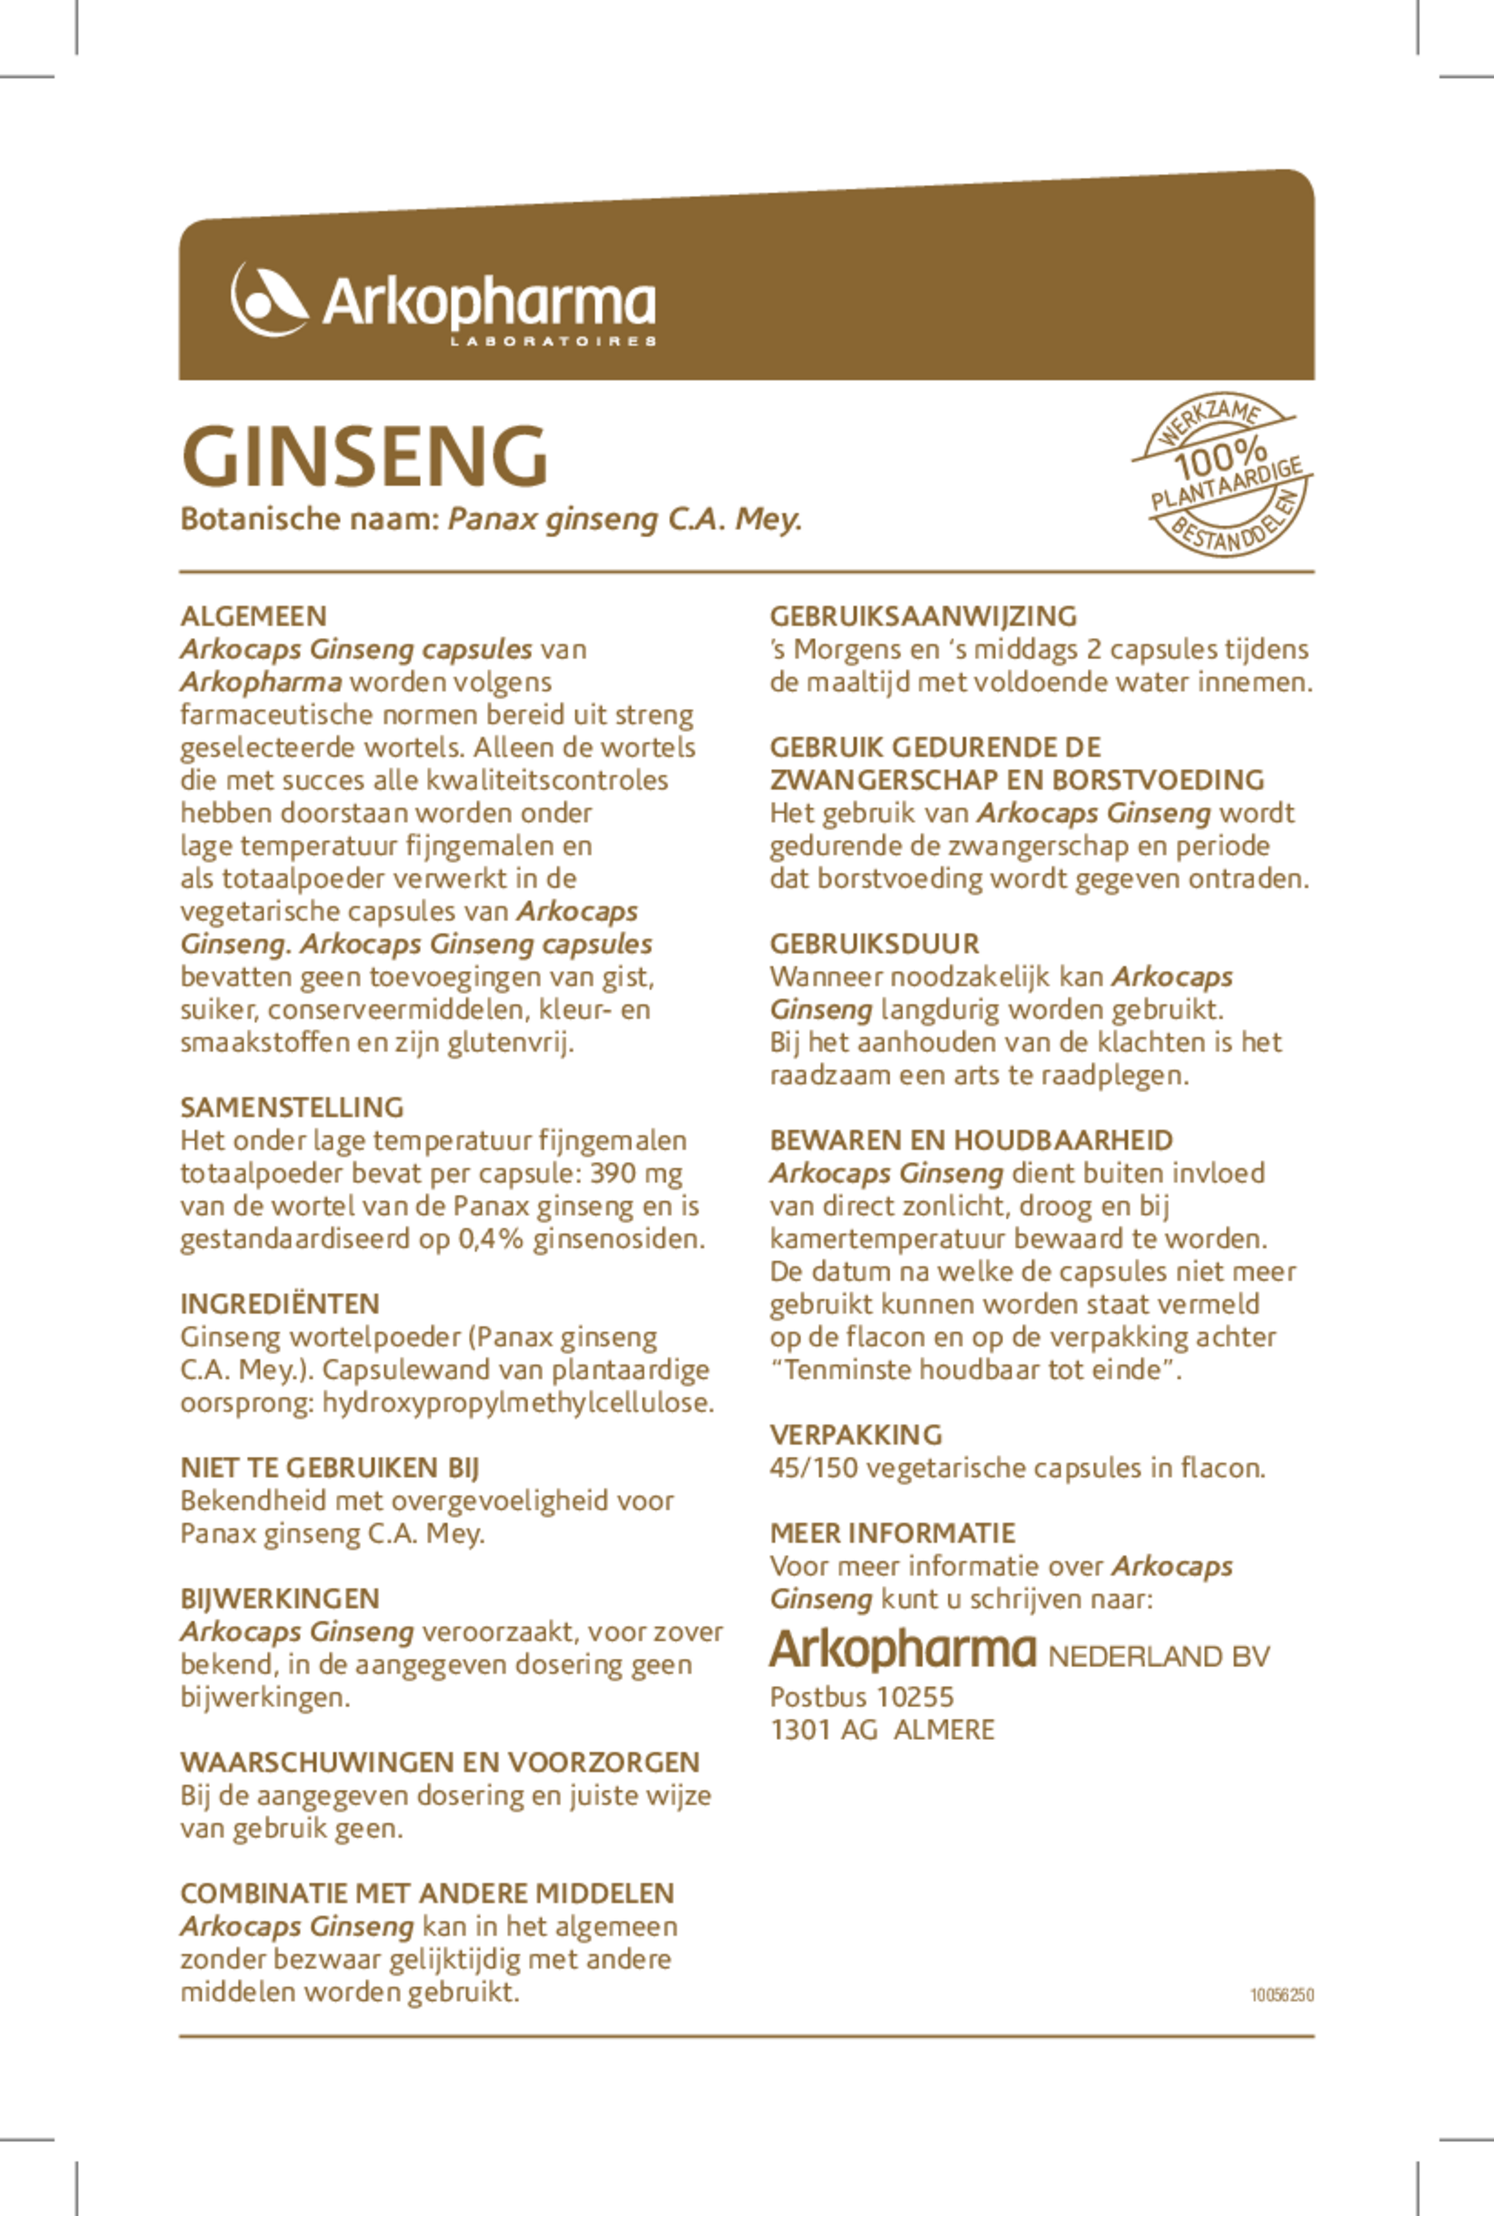 Ginseng Capsules afbeelding van document #1, gebruiksaanwijzing